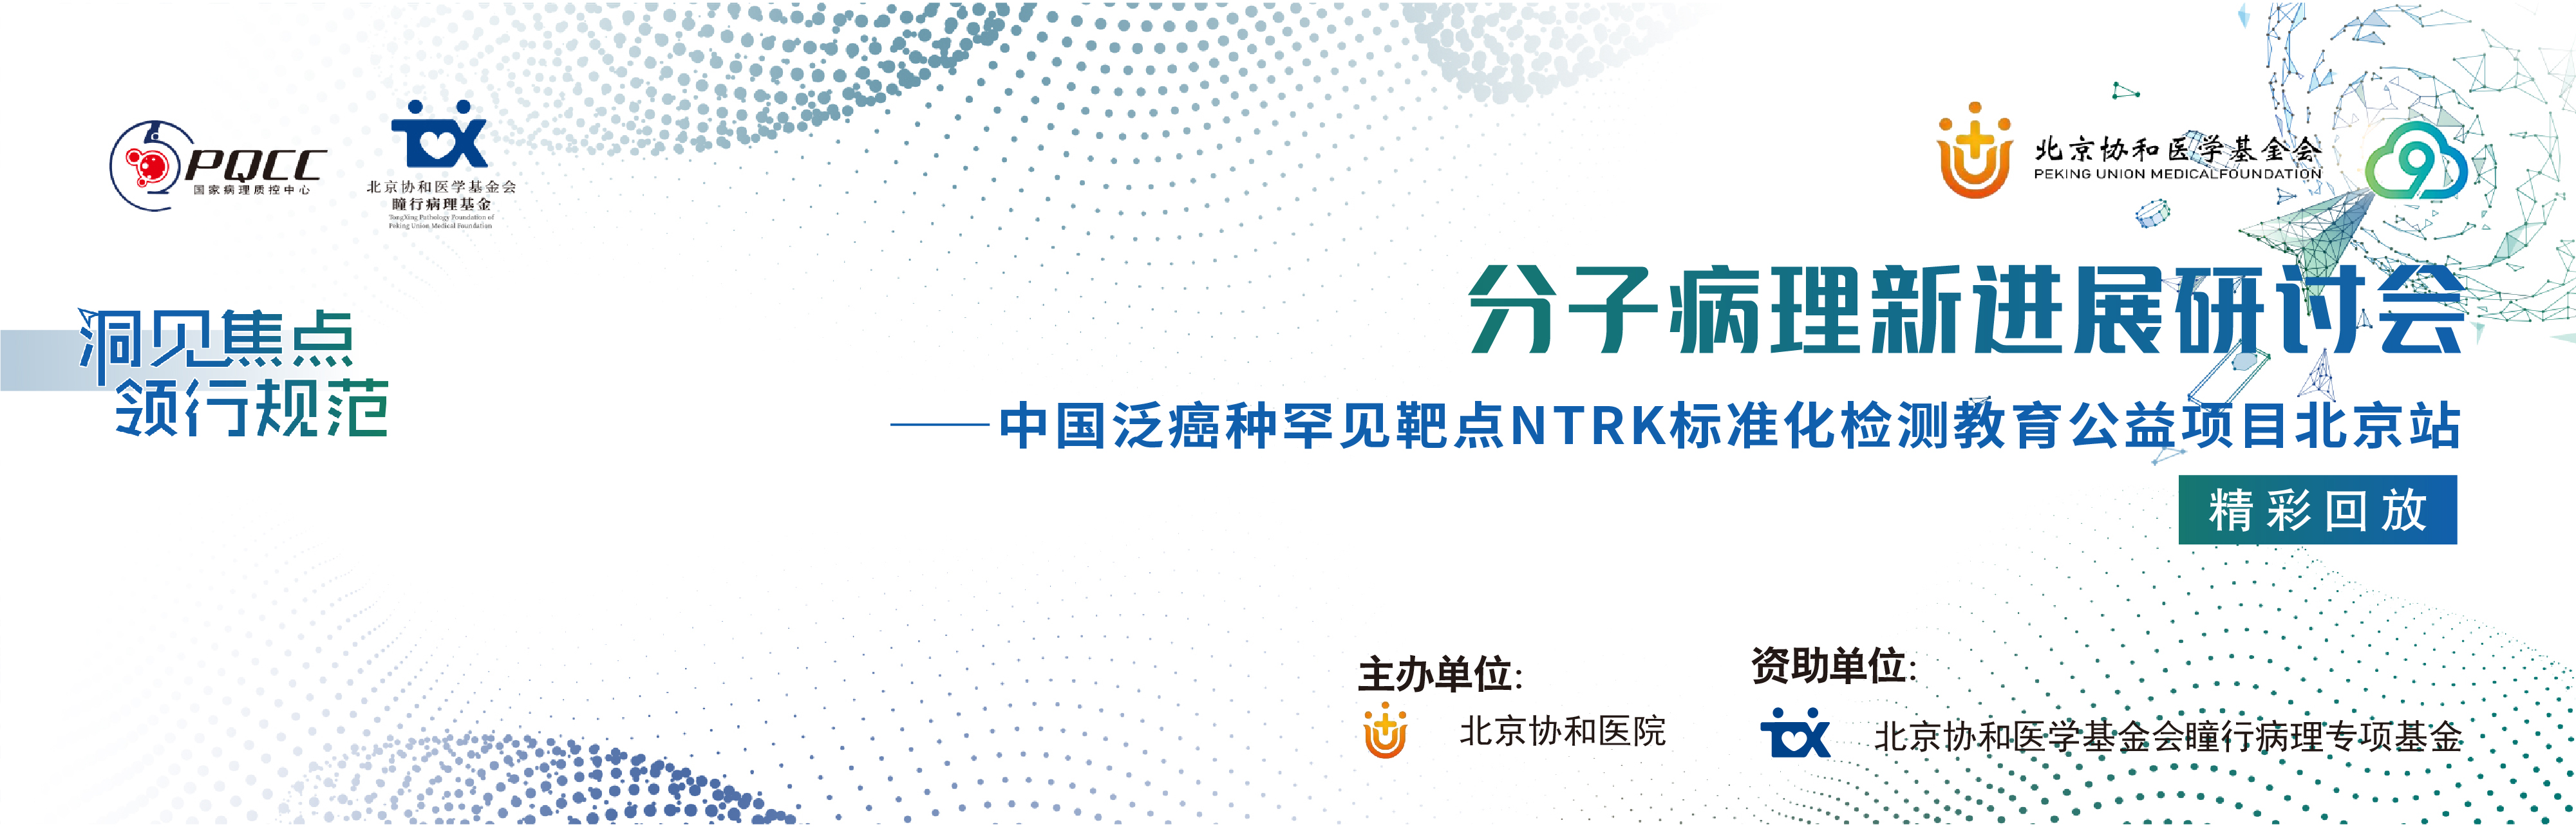 【精彩回放】分子病理新进展研讨会—中国泛癌种罕见靶点NTRK标准化检测教育公益项目北京站